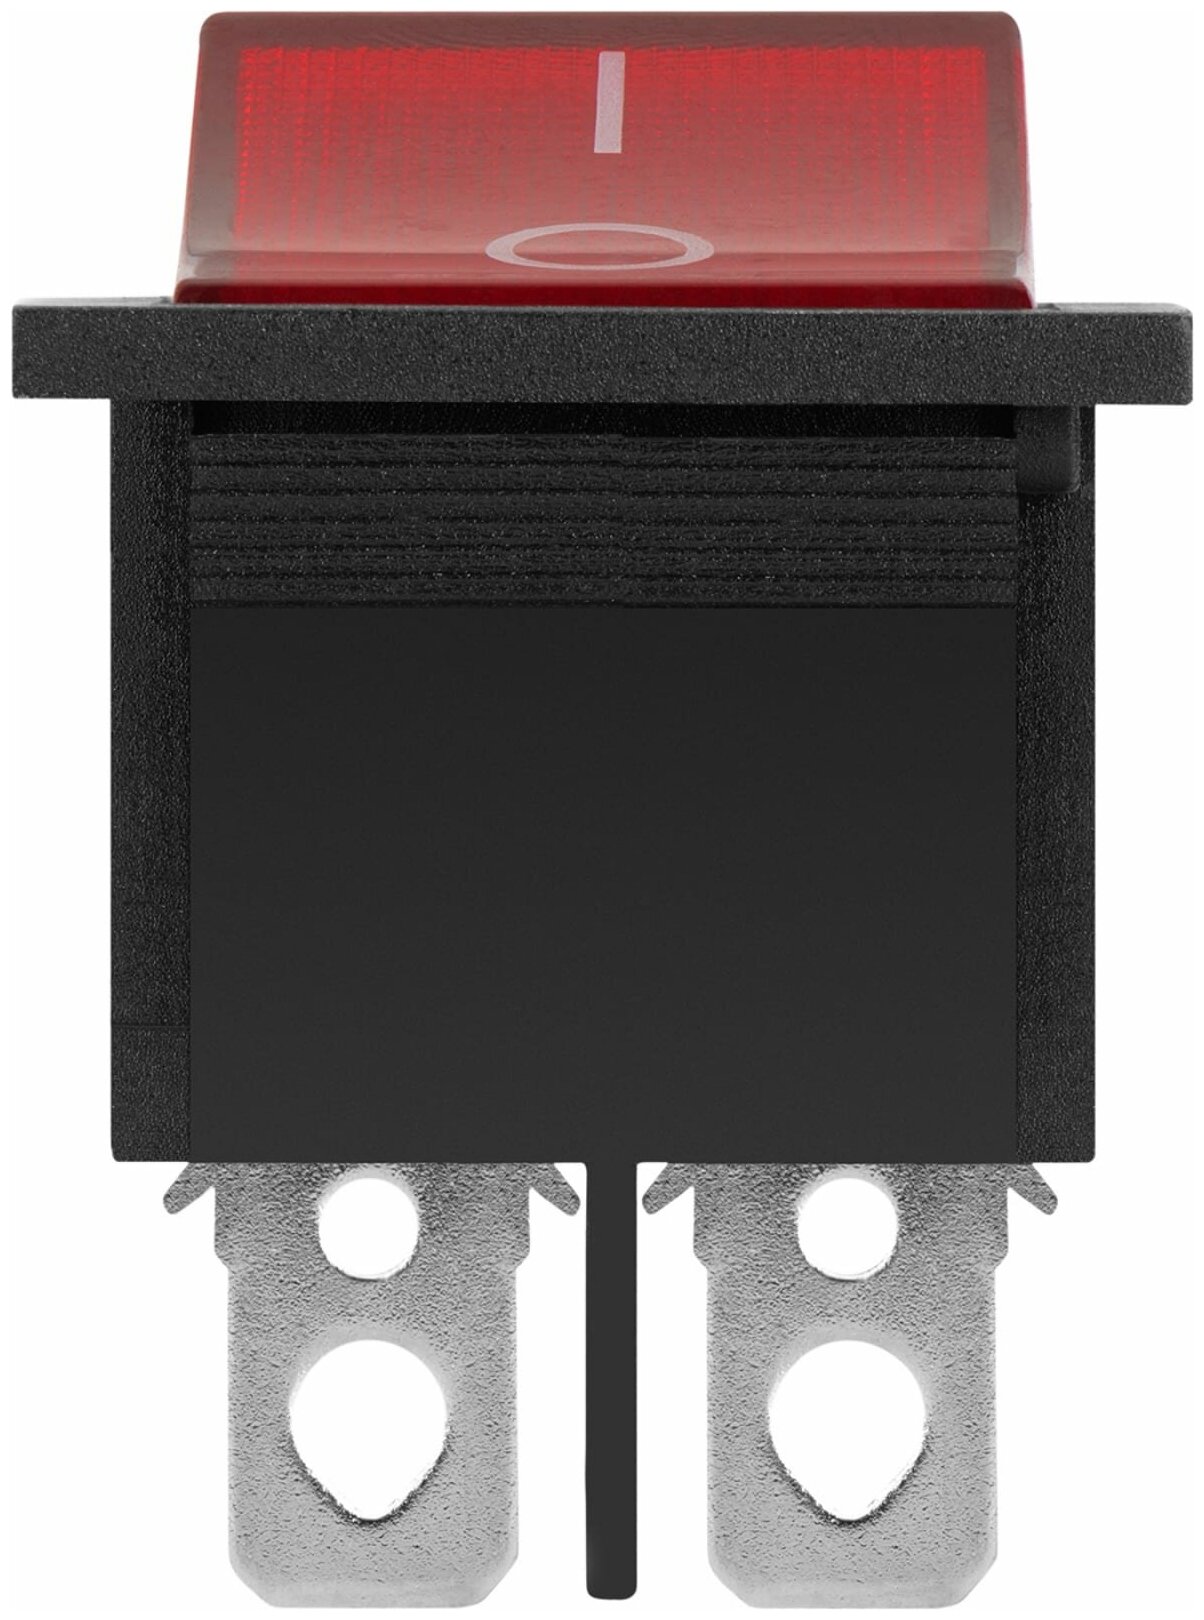 Выключатель клавишный 250В 16А (4с) ON-OFF красн. с подсветкой (RWB-502; SC-767; IRS-201-1) Rexant 36-2330